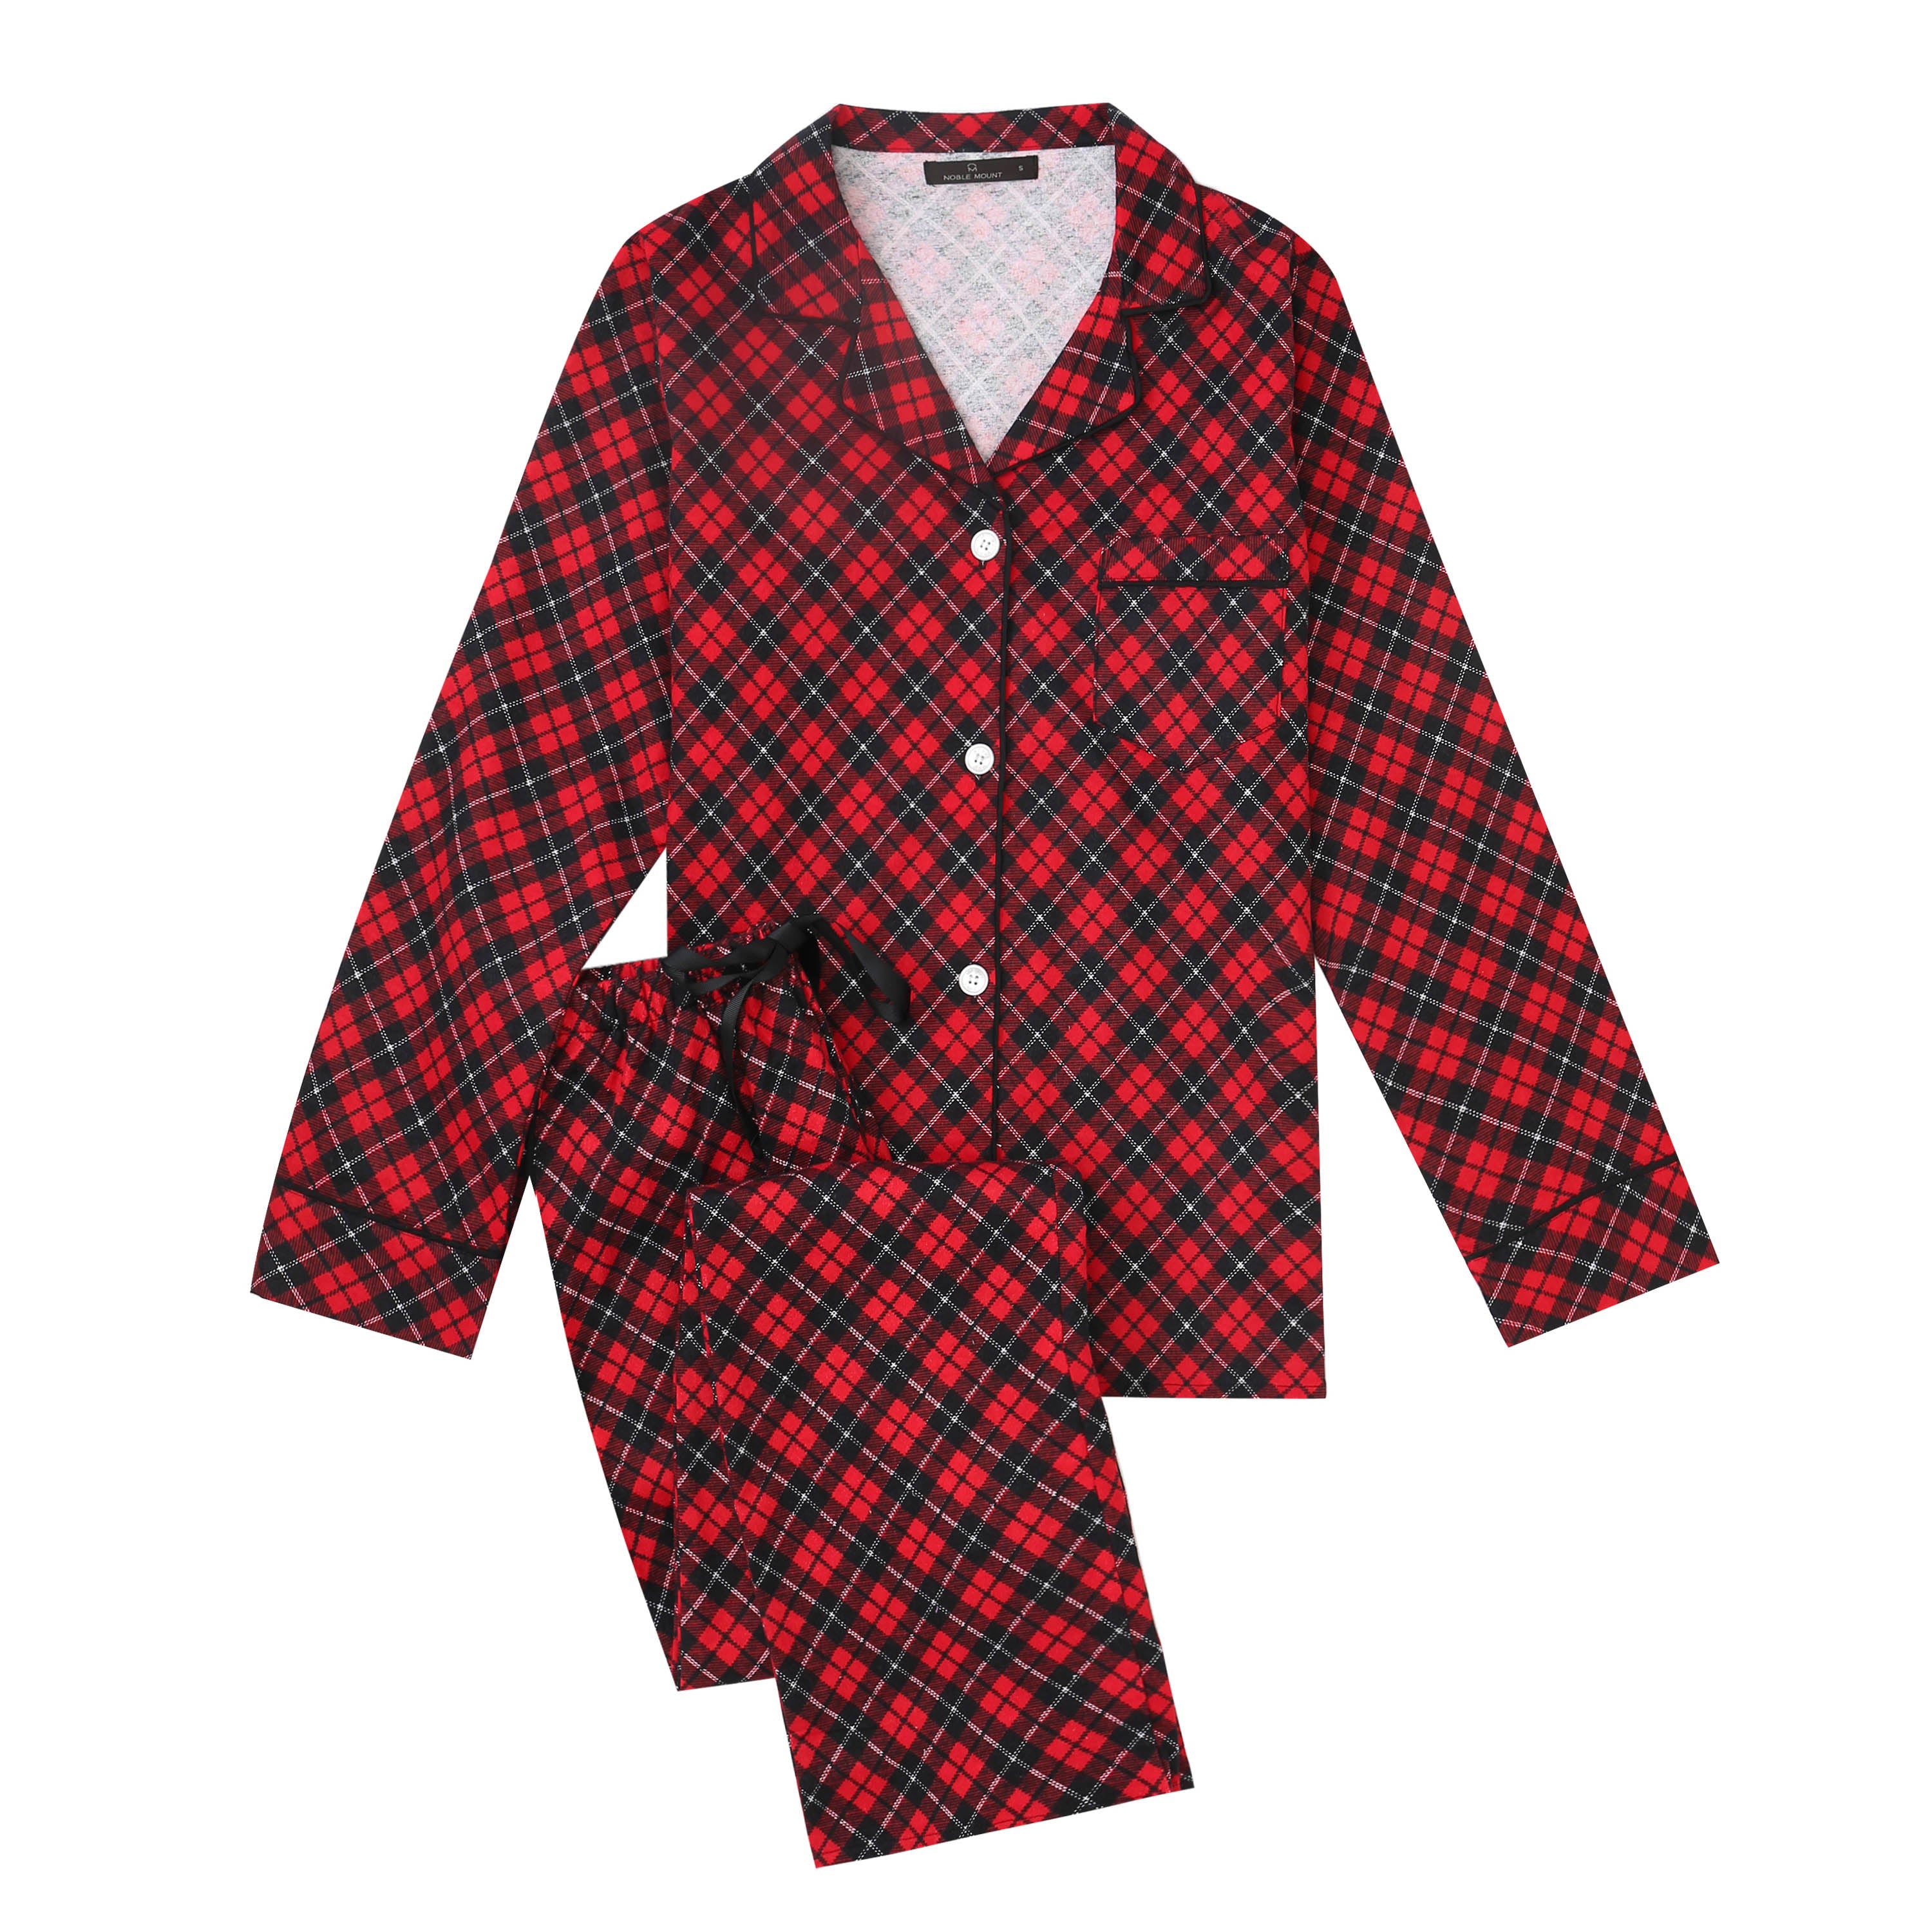 Women Pajamas Set - 100% Cotton Flannel Pajamas - Plaid Red-Black